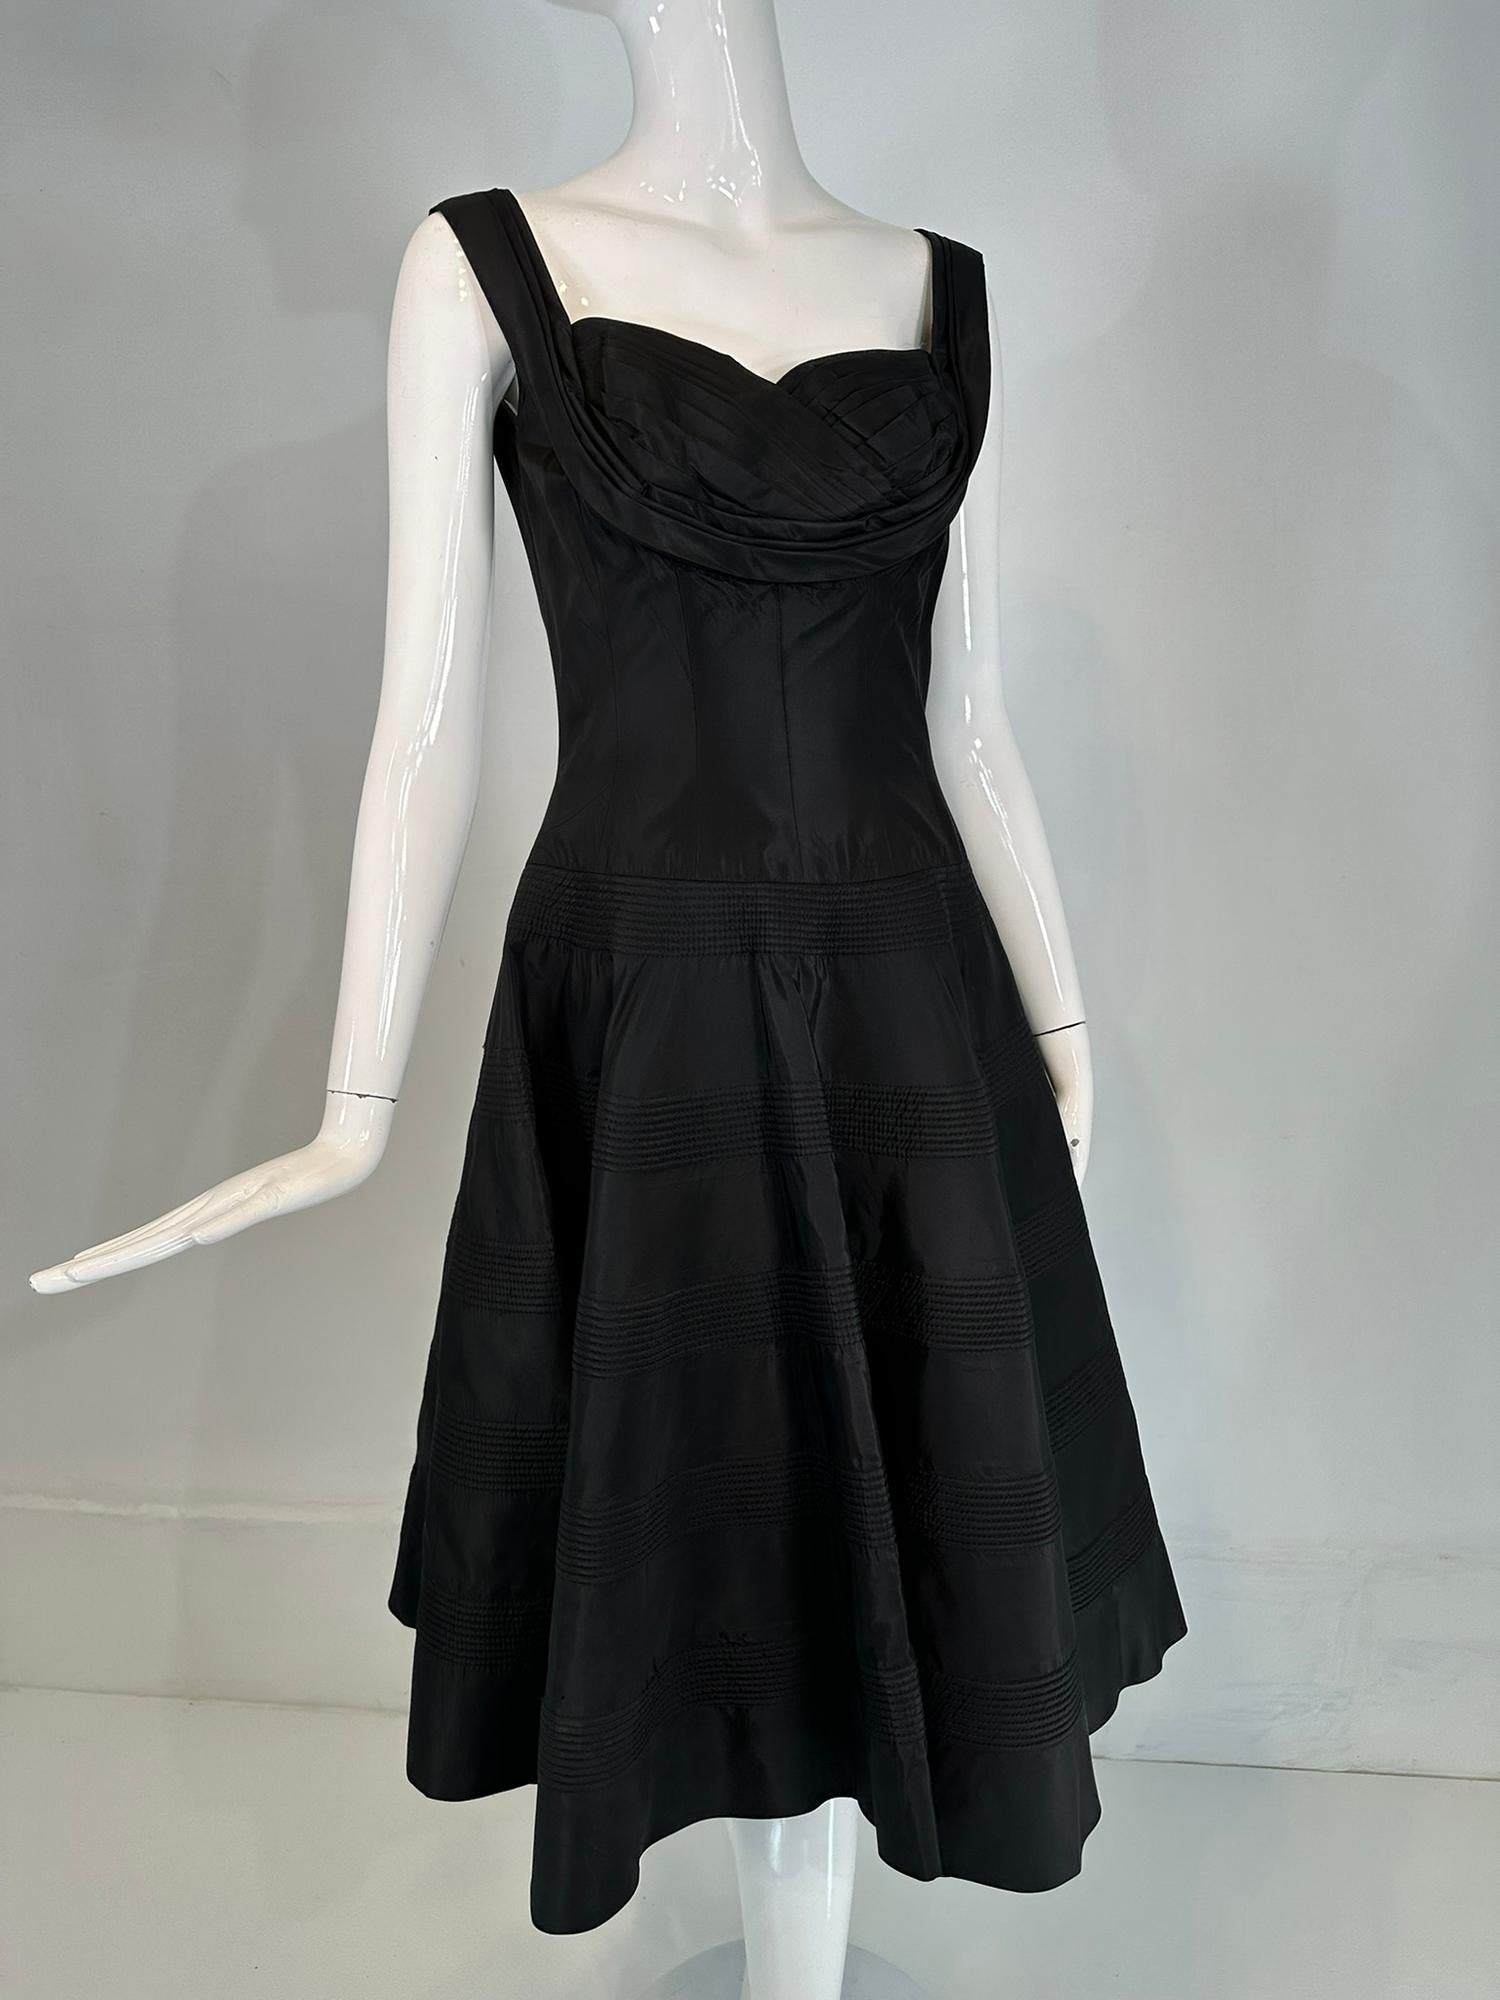 Fred Perlberg Dance Originals 1950s schwarz Taft scoop Mieder gesteppt vollen Kreis Rock Cocktail-Kleid. Ärmelloses Kleid mit offenem Rundhalsausschnitt und plissierten Trägern, die sich um die Schulter legen. Das Mieder ist tailliert, hat einen